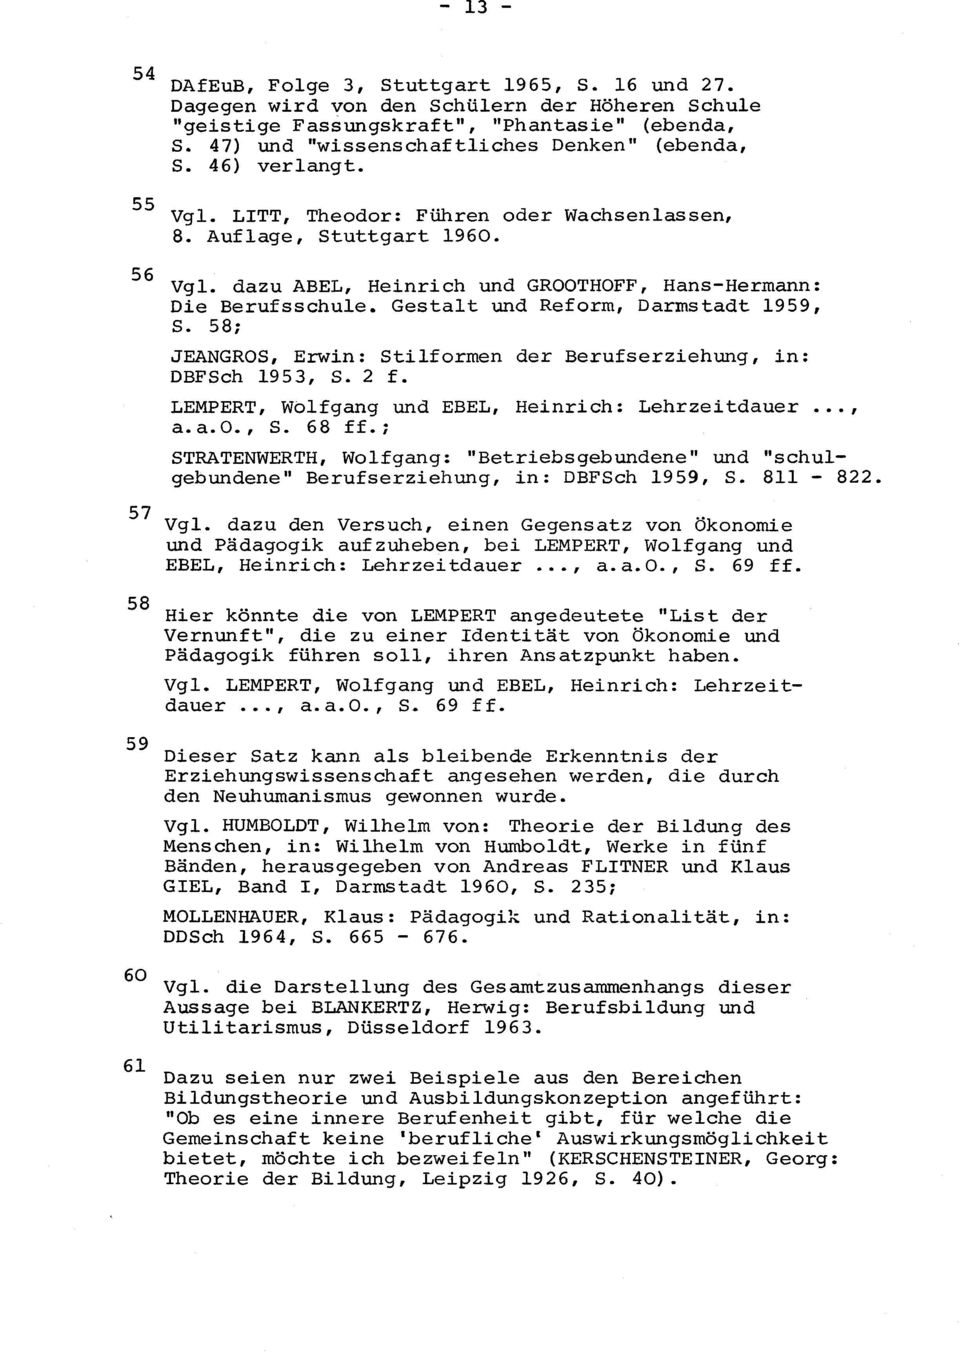 Gestalt und Reform, Darmstadt 1959, S. 58; JEANGROS, Erwin: Stilformen der Berufserziehung, in: DBFSch 1953, S. 2 f. LEMPERT, Wolfgang und EBEL, Heinrich: Lehrzeitdauer..., a.a.o., S. 68 ff.